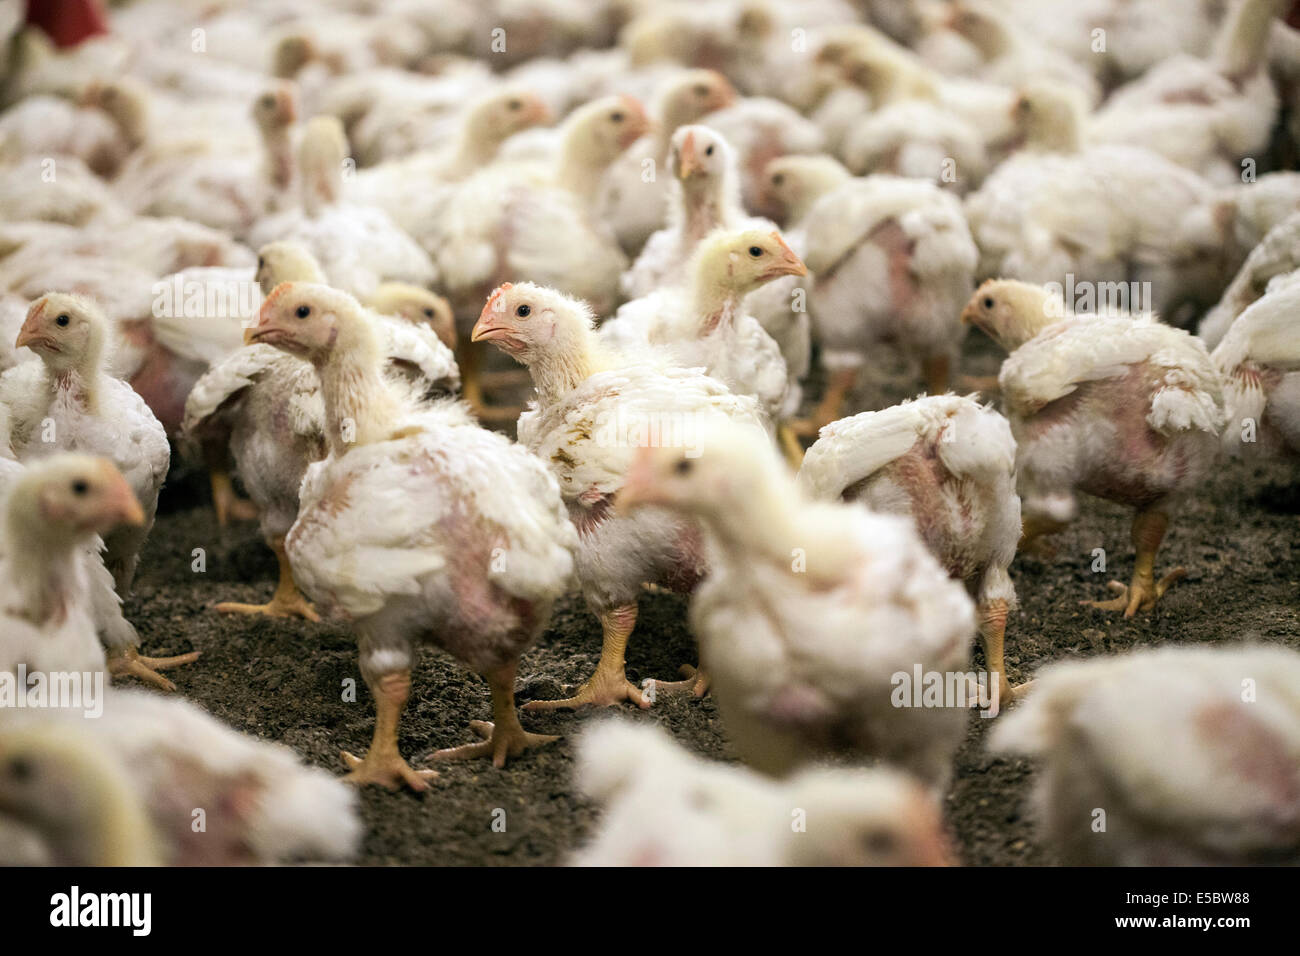 L'élevage de poulets dans la tête d'impression à la ferme d'élevage de poulets qui n'utilise pas d'antibiotiques dans leur élevage. Eindhoven, Hollande Banque D'Images